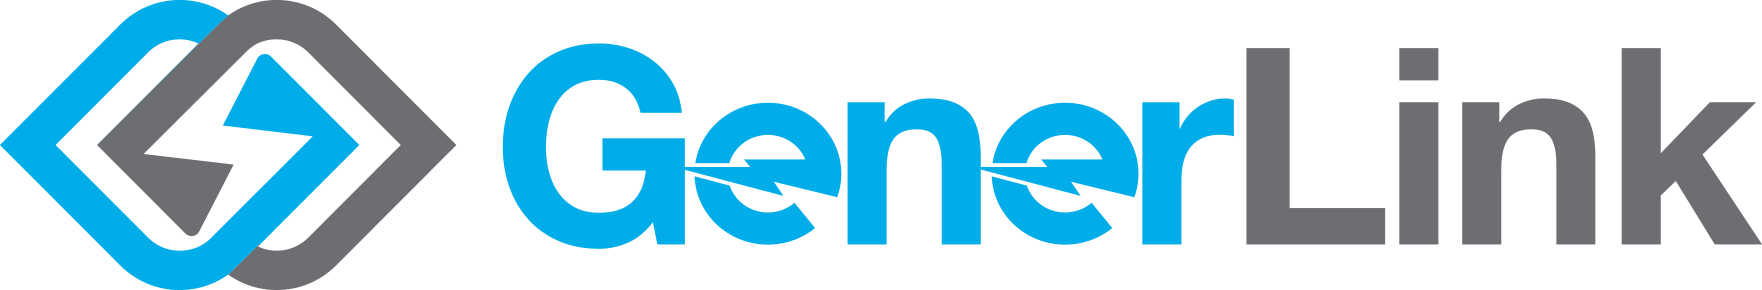 GenerLink Logo blue-grey